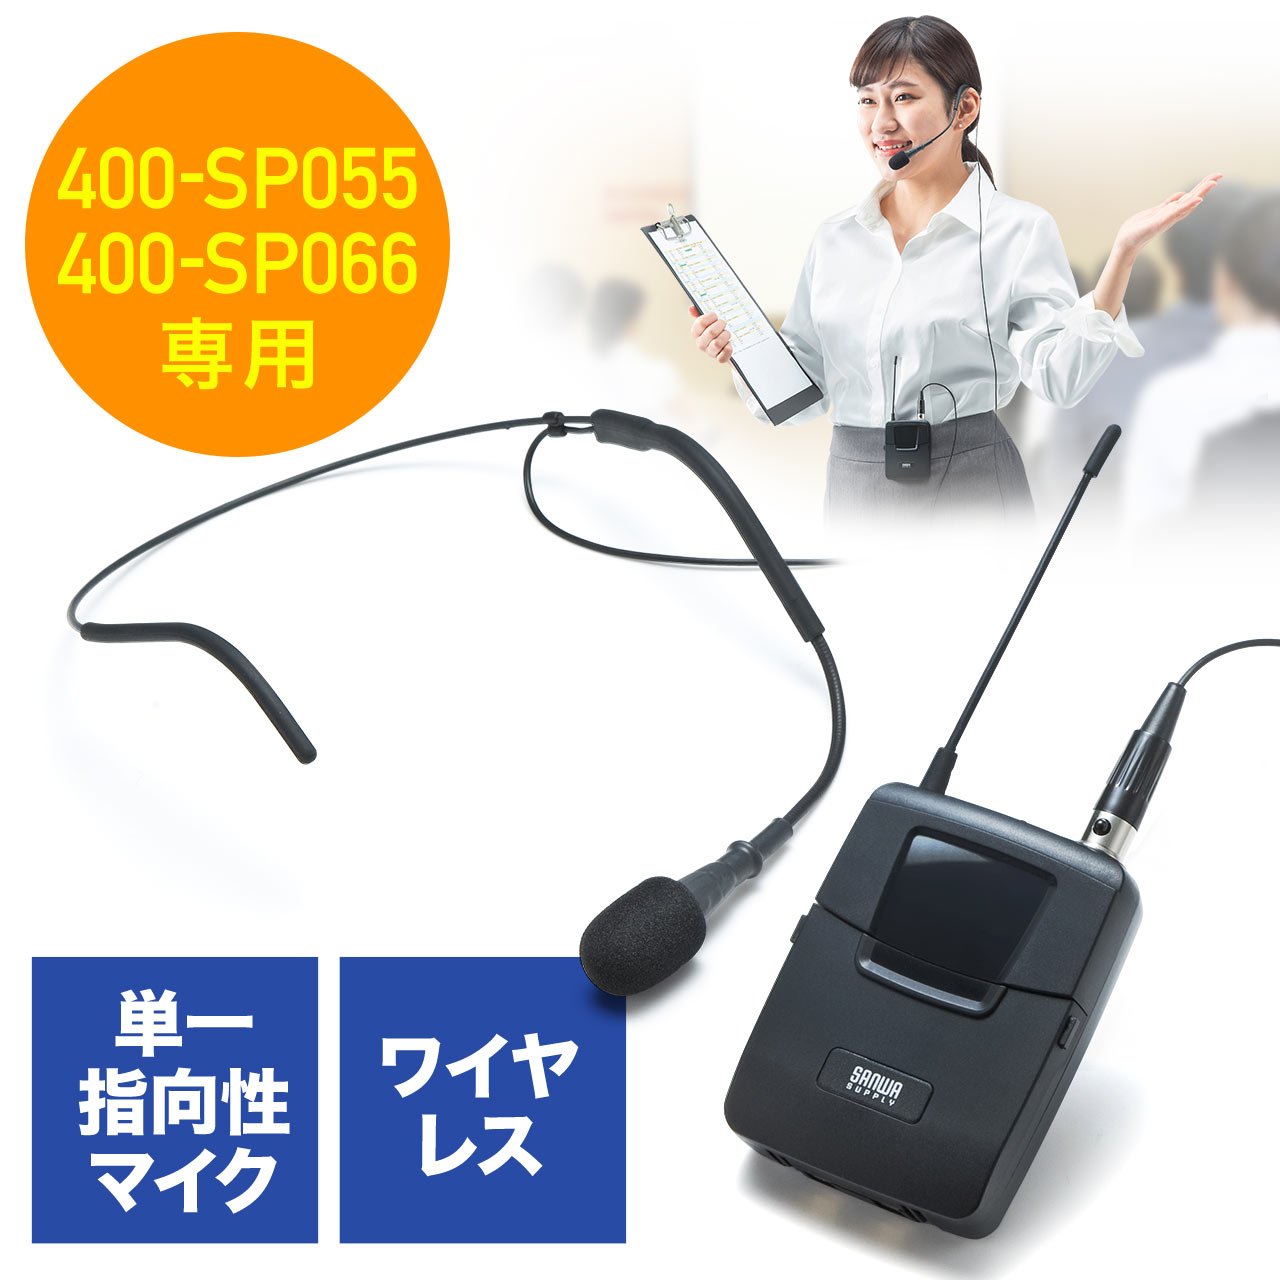 ワイヤレスヘッドマイク ハンズフリーマイク 400-SP055/400-SP066 拡声器用 ツーピース型 400-SP075の販売商品  通販ならサンワダイレクト